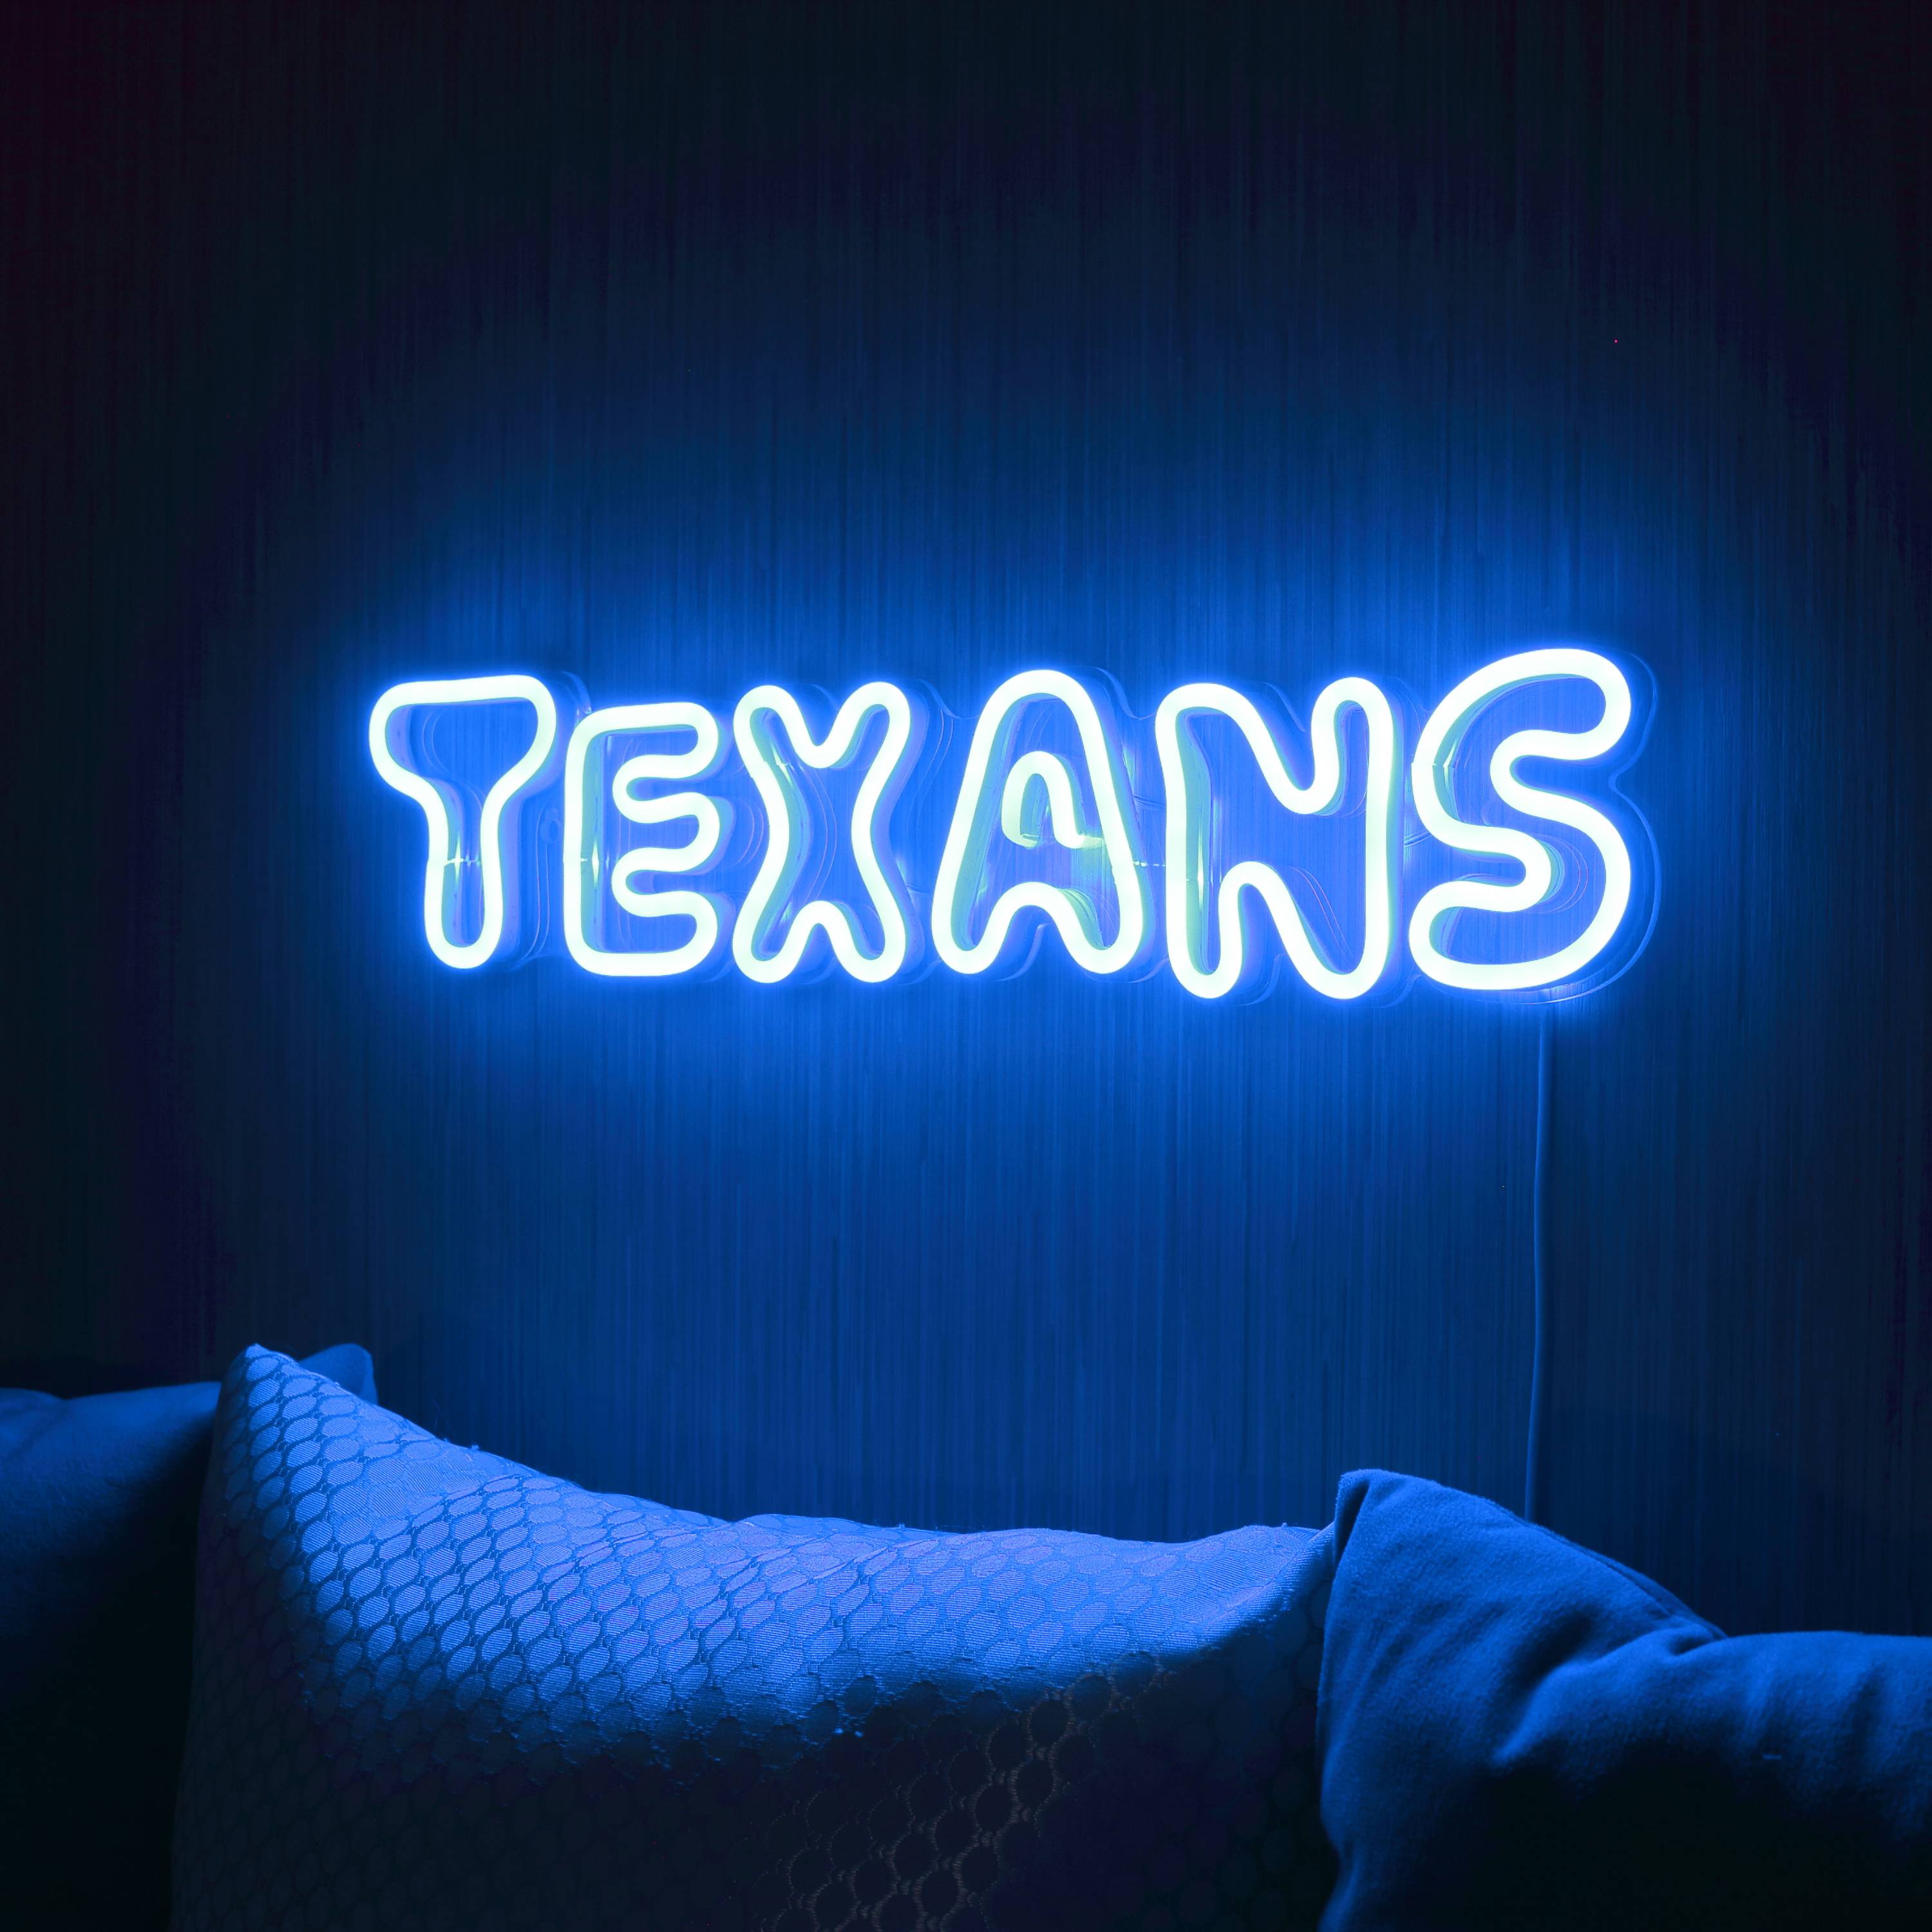 NFL TEXANS Large Flex Neon LED Sign